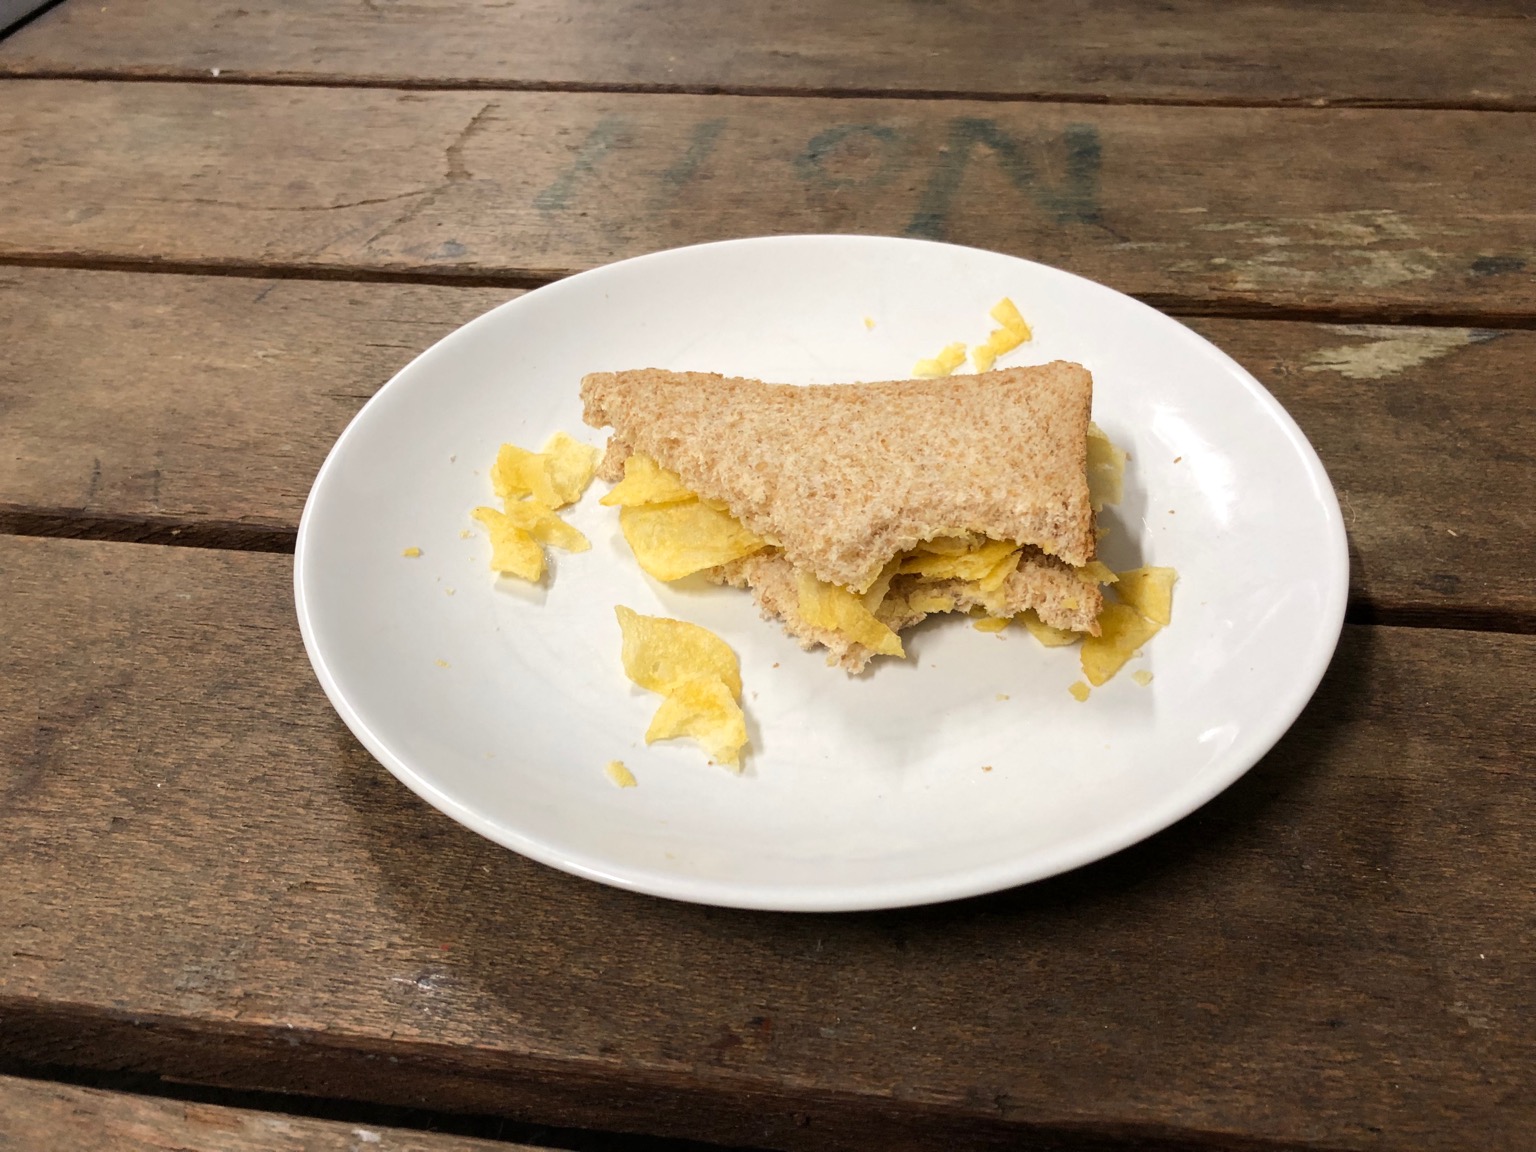 Partially-eaten brown crisp sandwich